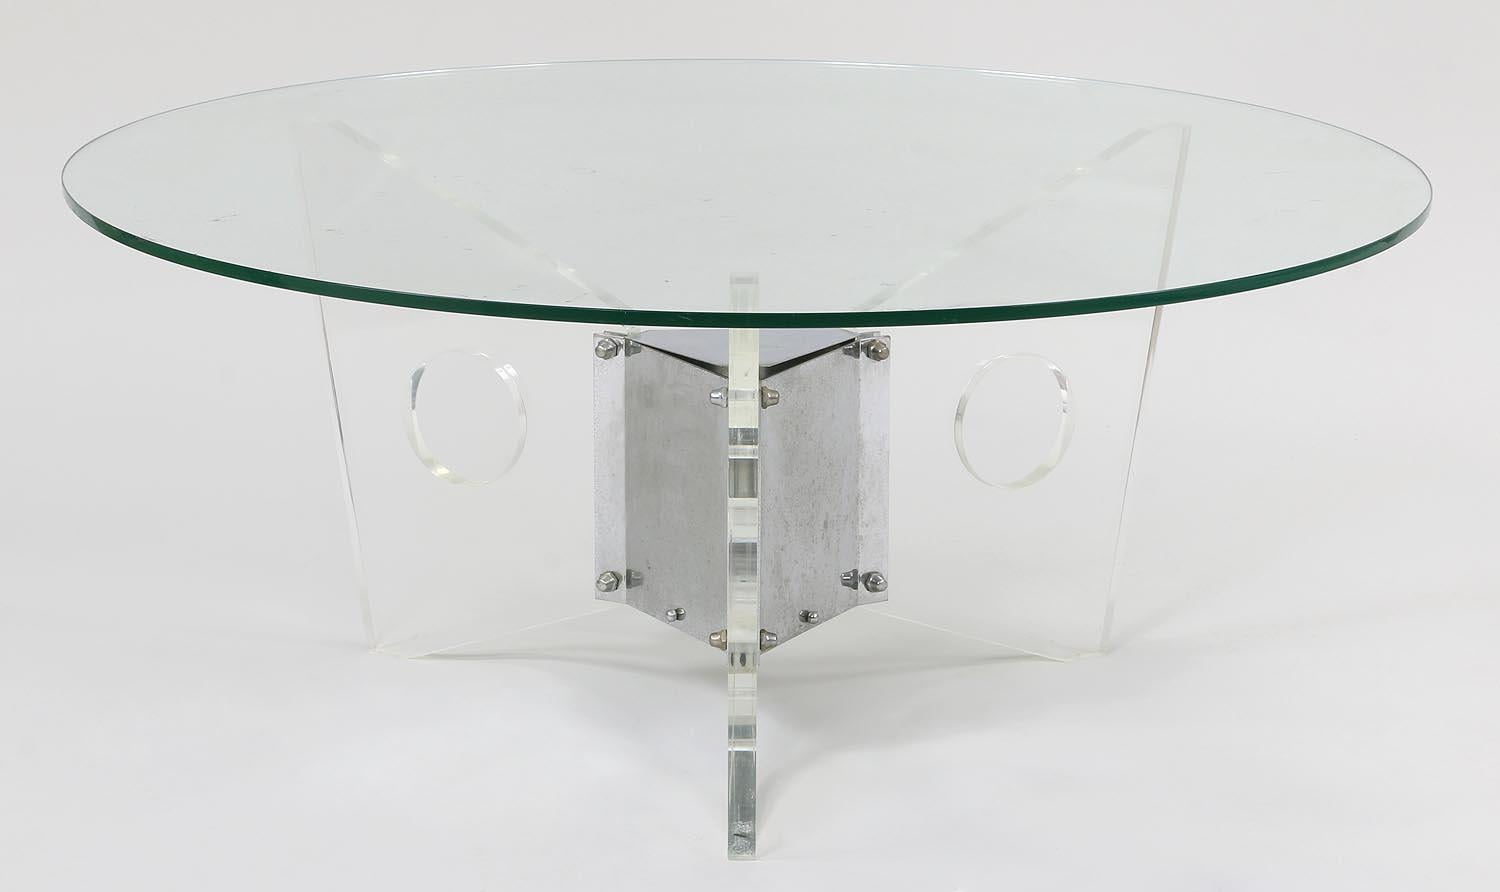 Magnifique table basse ronde en verre Lucite et base en chrome, de style moderne du milieu du siècle dernier

Mesures :
16-1/4'' H x 38'' D
Le verre est remplaçable si vous souhaitez avoir une largeur différente.